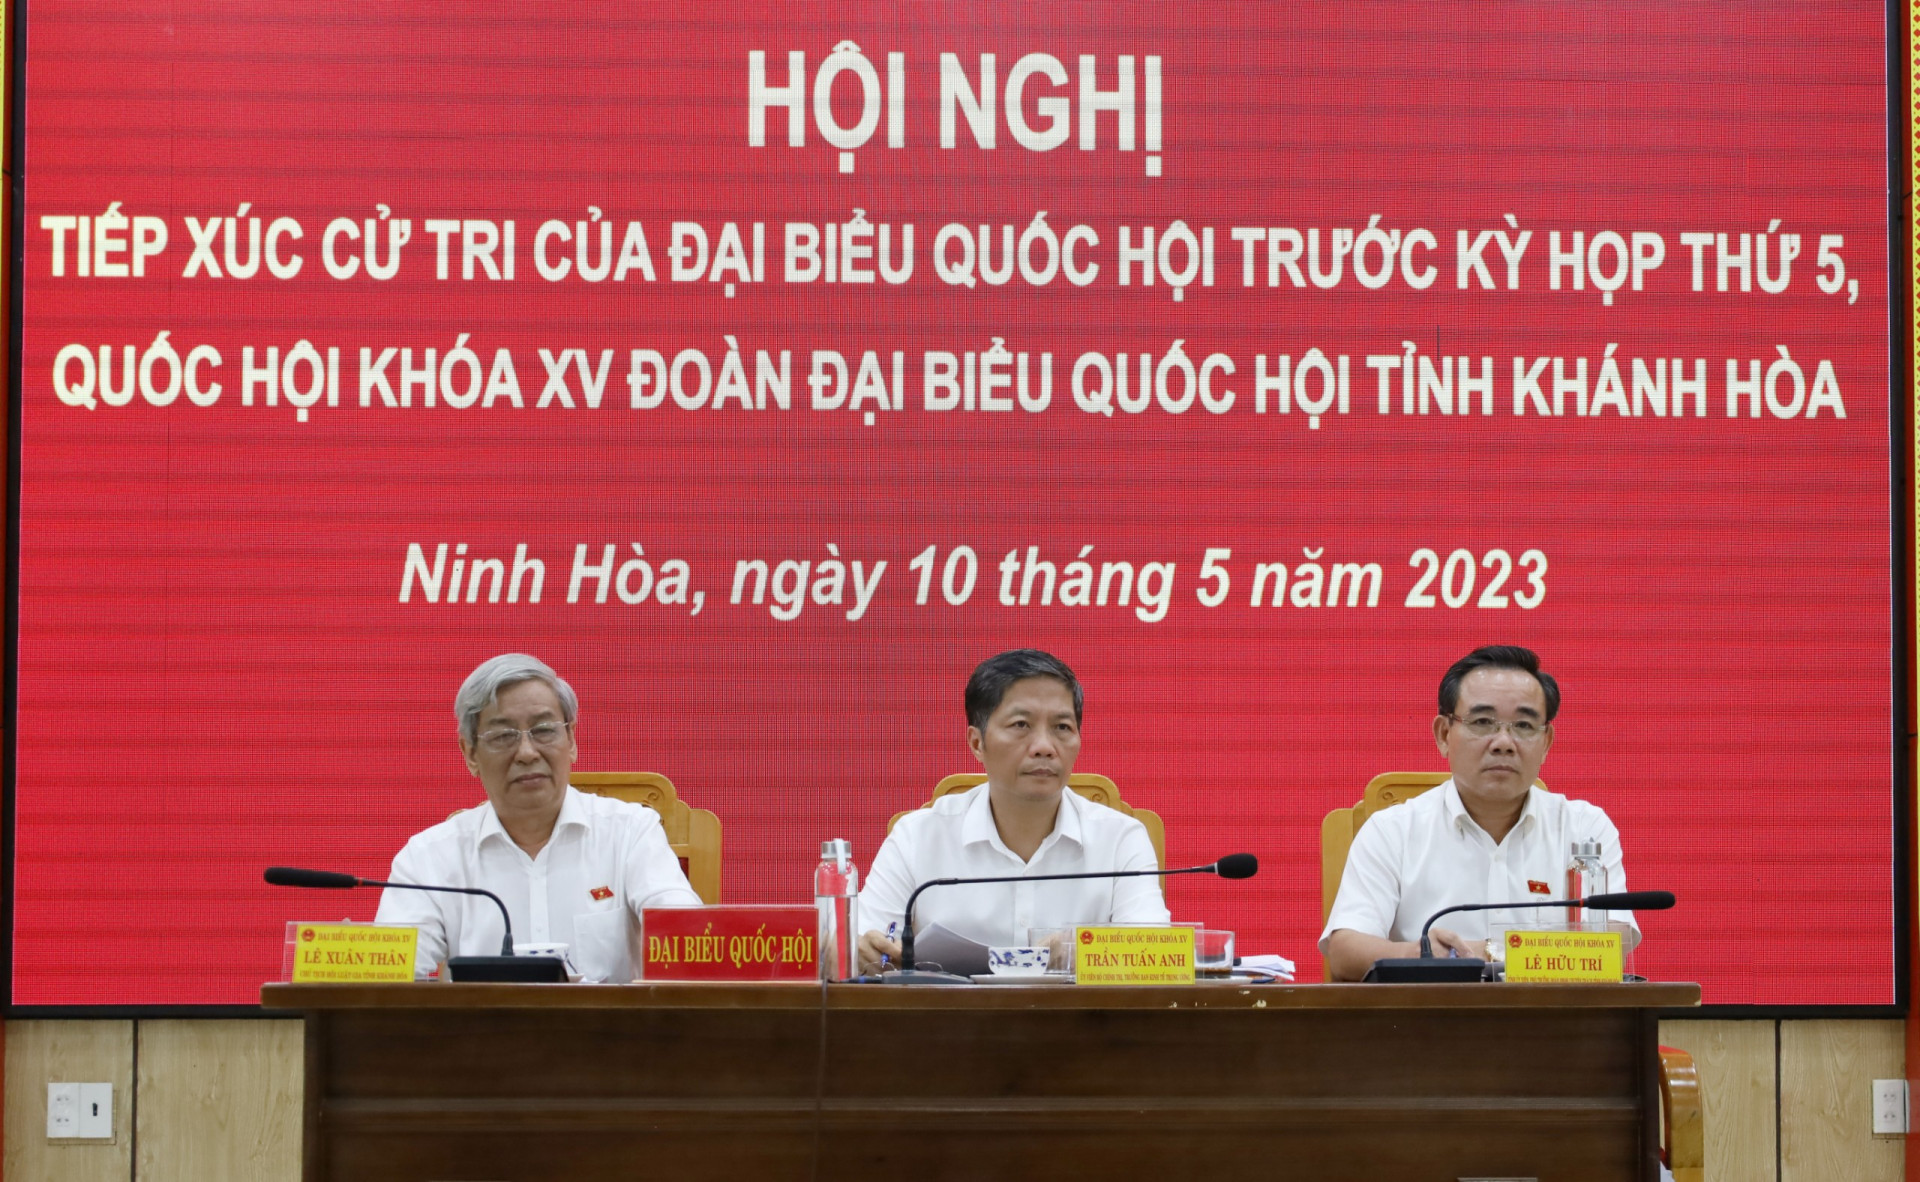 Các đại biểu Quốc hội tham dự hội nghị tiếp xúc cử tri tại Ninh Hòa.